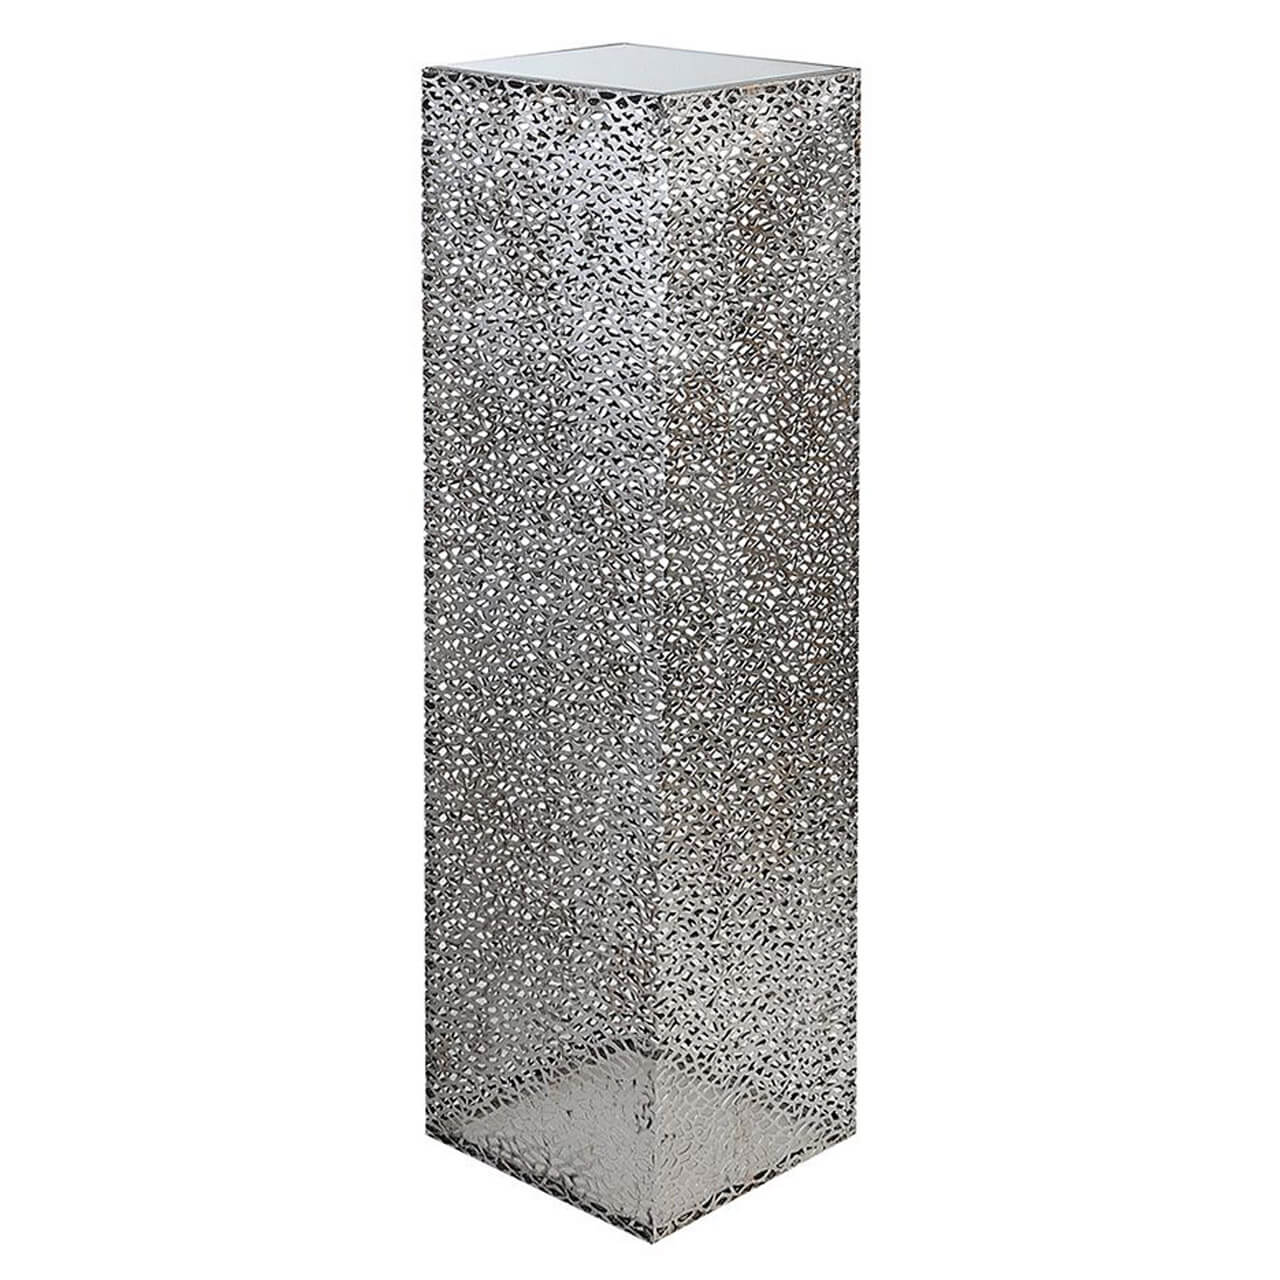 Vierkante zuil in silverkleurig metaal | Purley | H. 100 cm